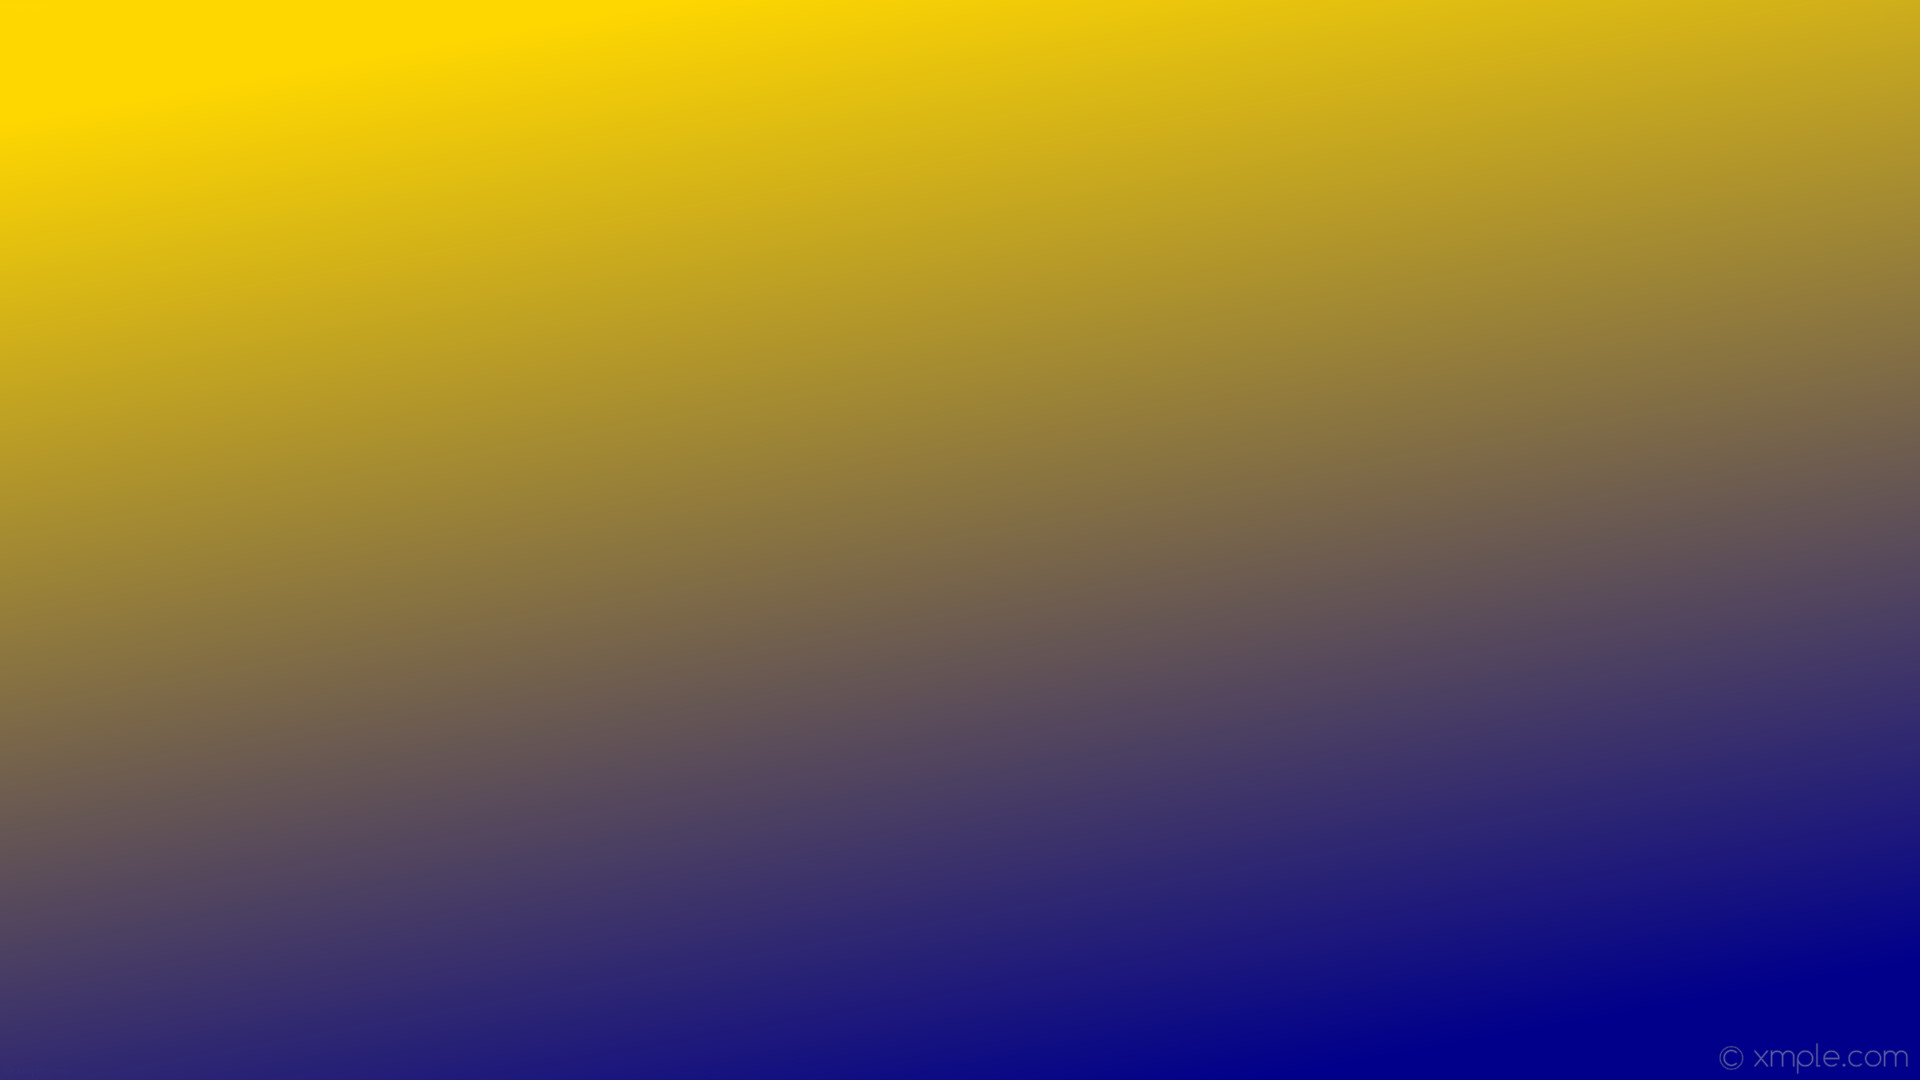 Wallpaper Blue Yellow Gradient Linear Dark Blue Gold - Cobalt Blue - HD Wallpaper 